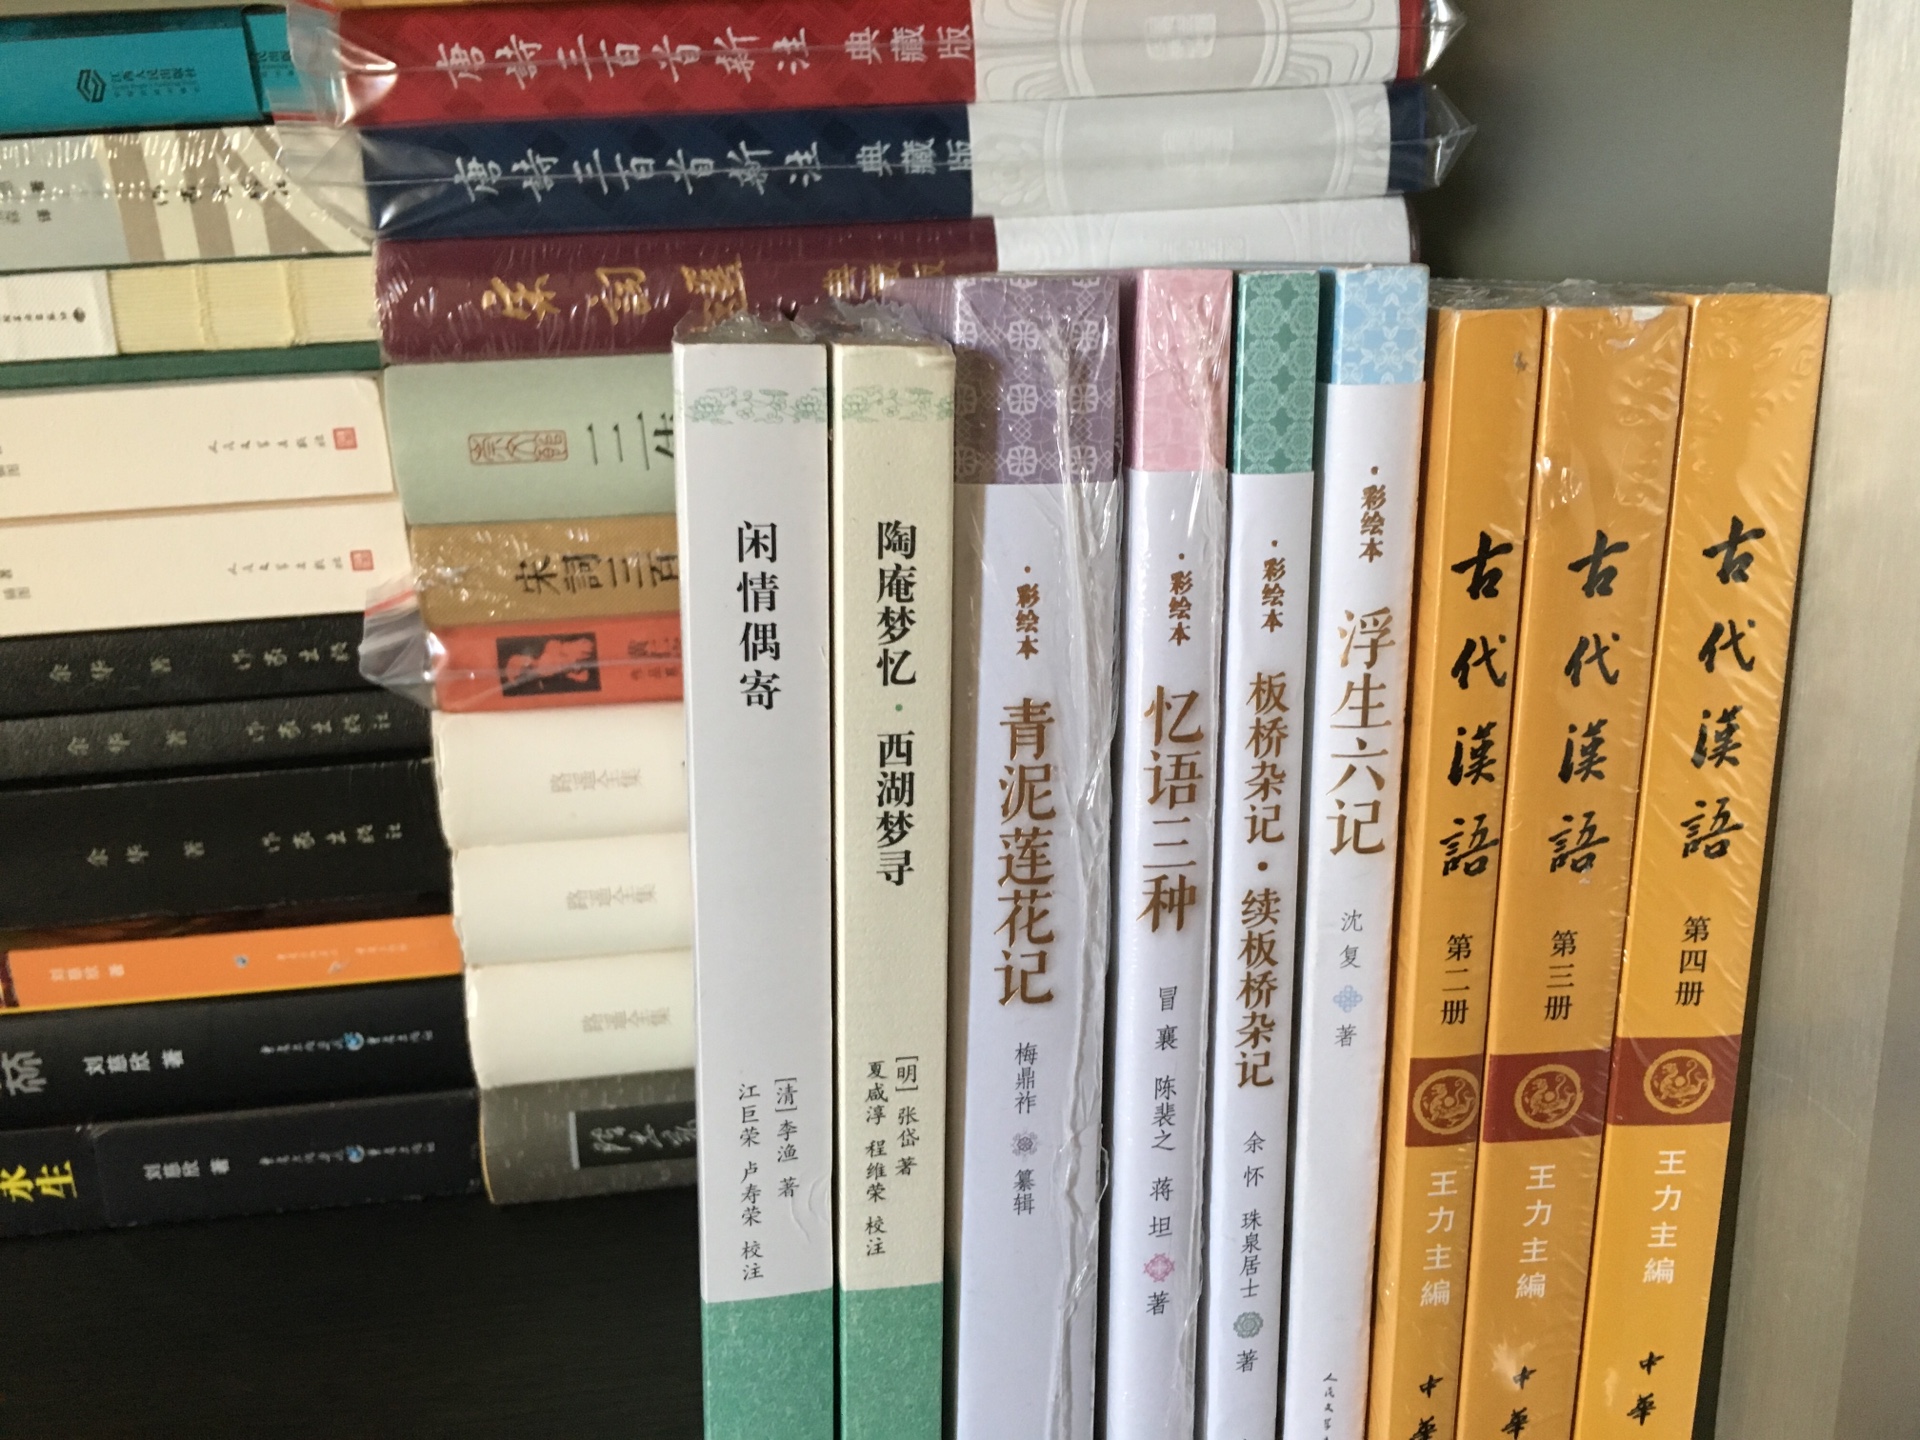 这套古代汉语有精装本，平装价格优势较大。内容没得说，对于阅读、学习都很合适